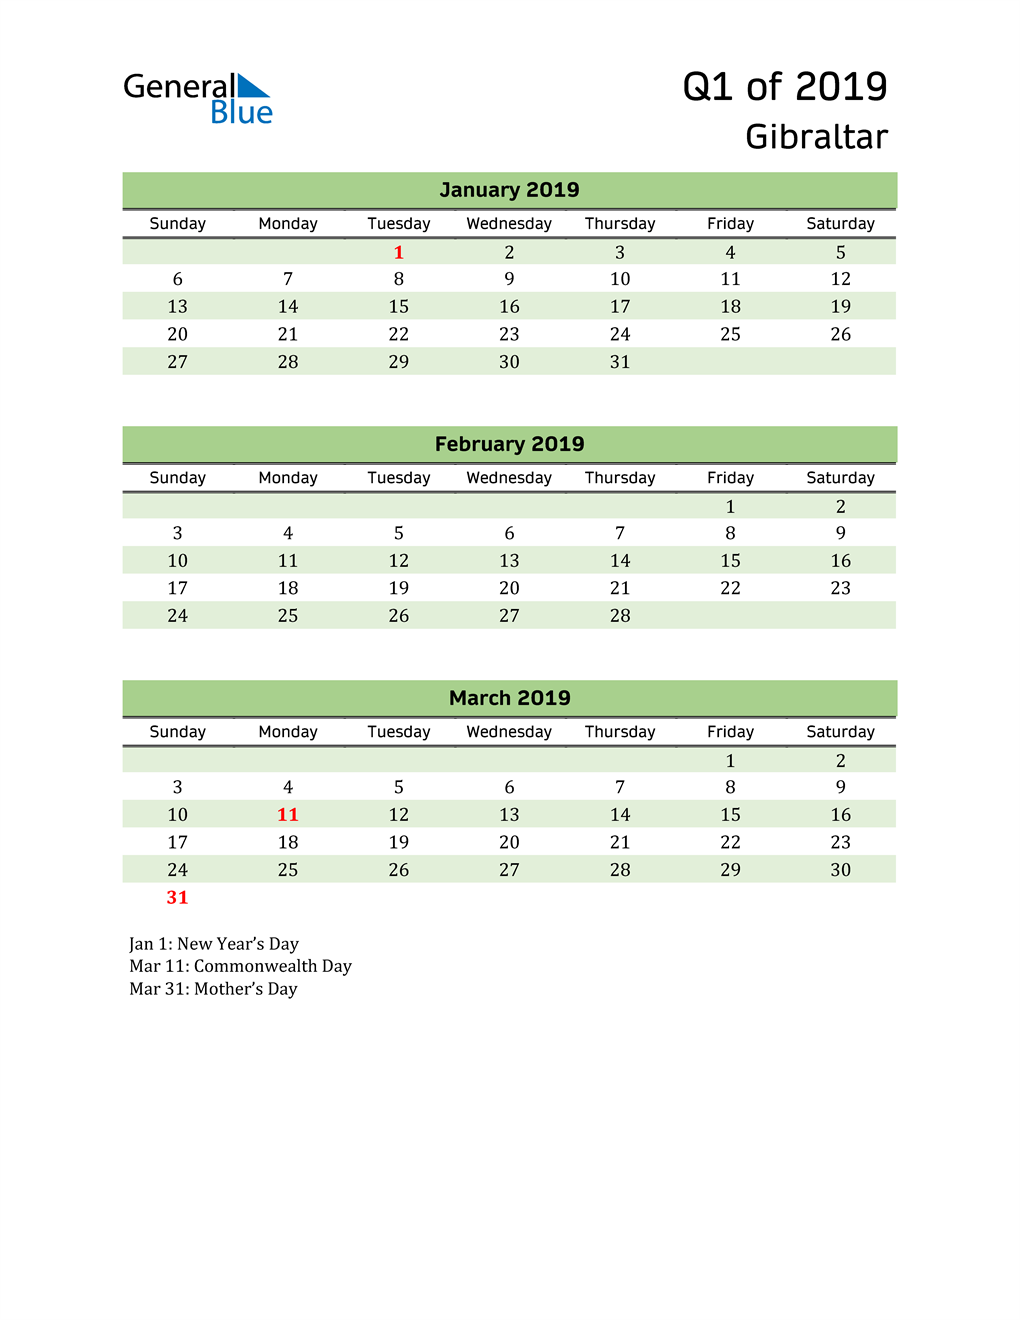  Quarterly Calendar 2019 with Gibraltar Holidays 